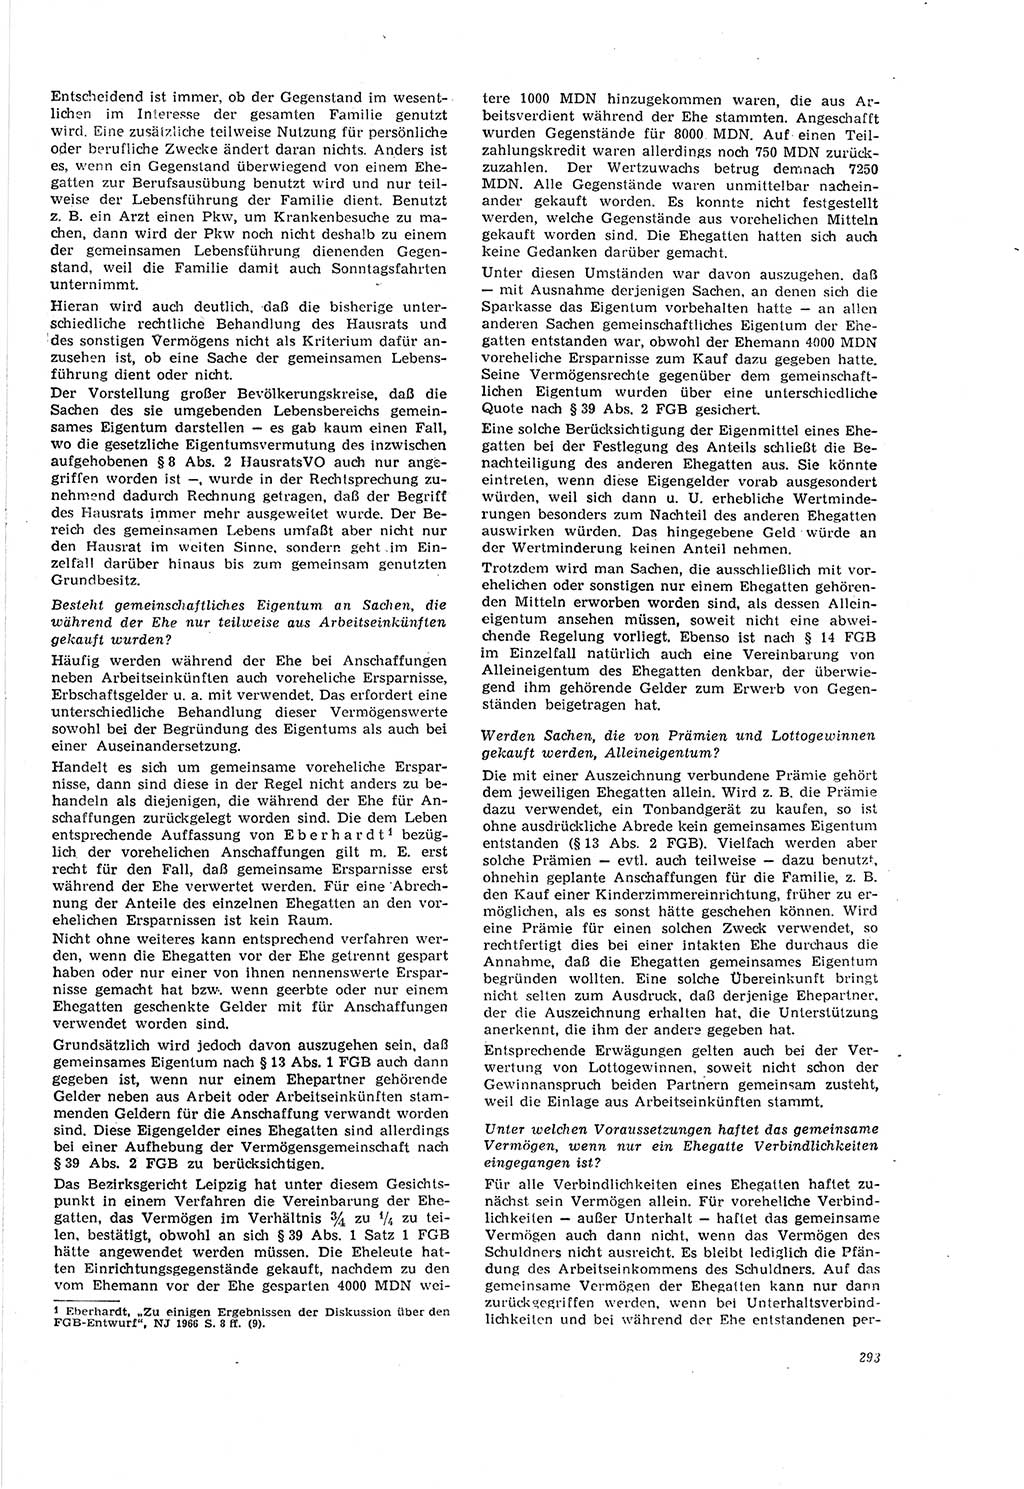 Neue Justiz (NJ), Zeitschrift für Recht und Rechtswissenschaft [Deutsche Demokratische Republik (DDR)], 20. Jahrgang 1966, Seite 293 (NJ DDR 1966, S. 293)